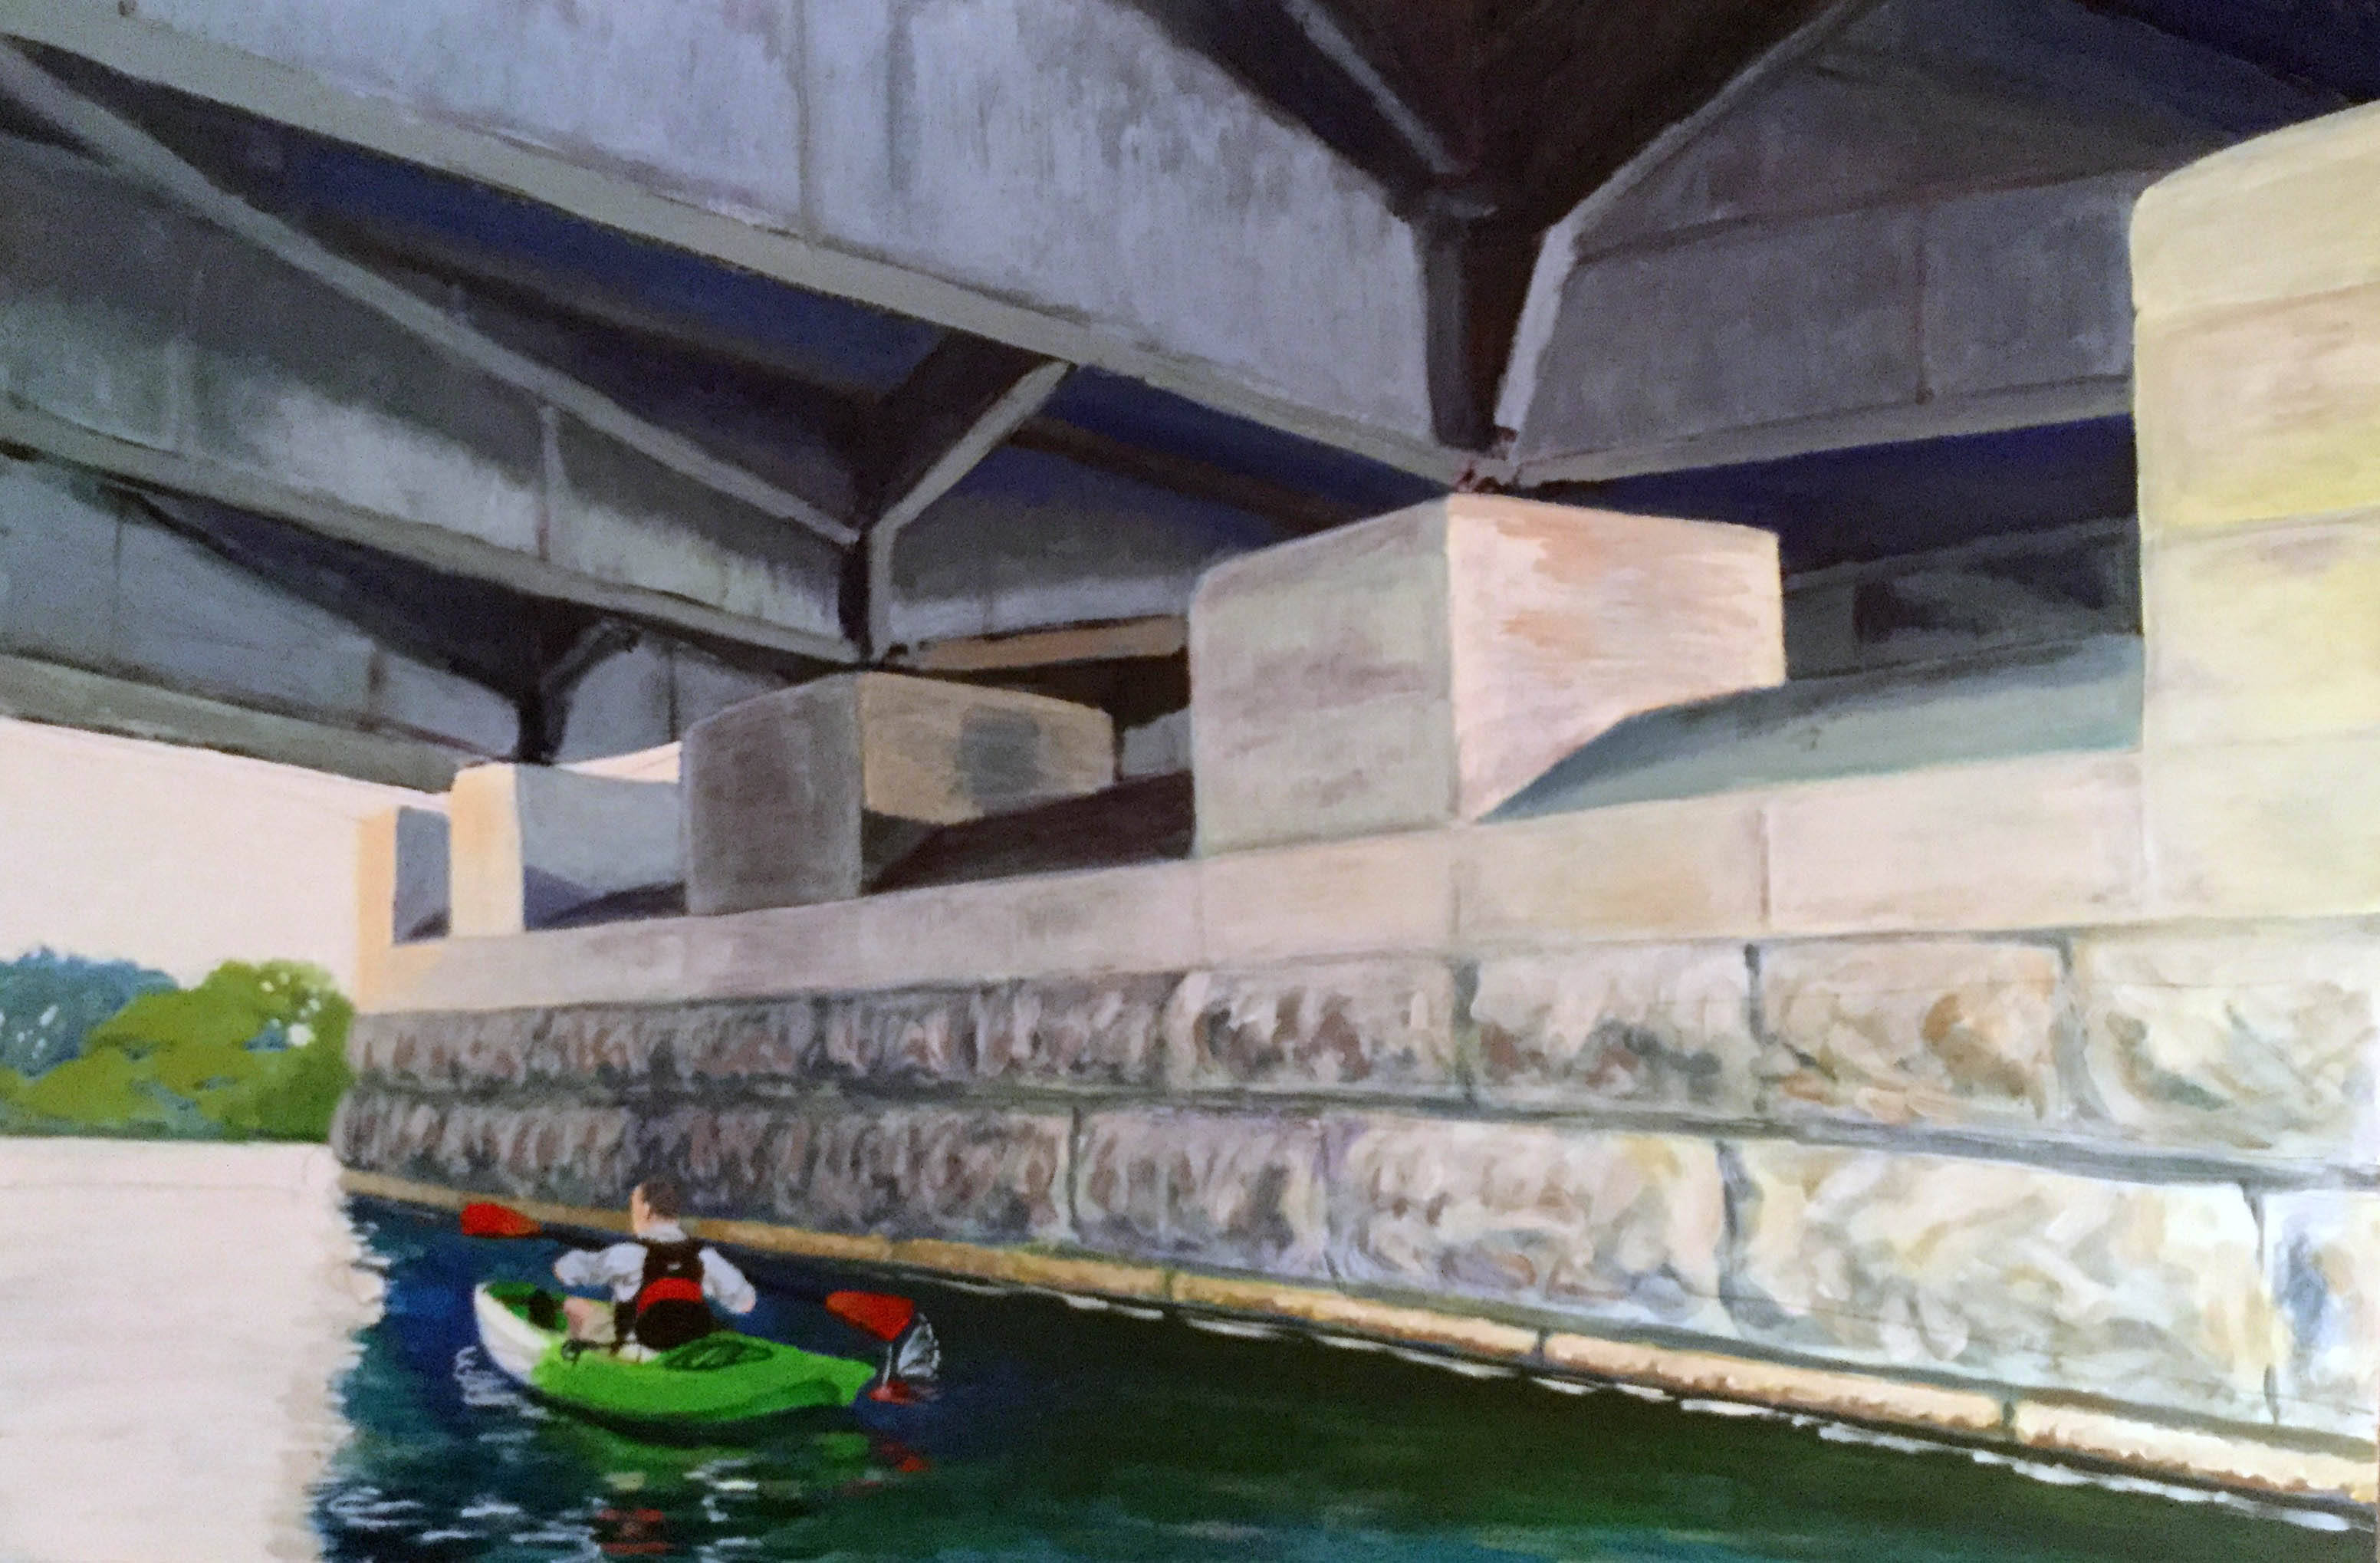 Underneath: Theodore Roosevelt Memorial Bridge